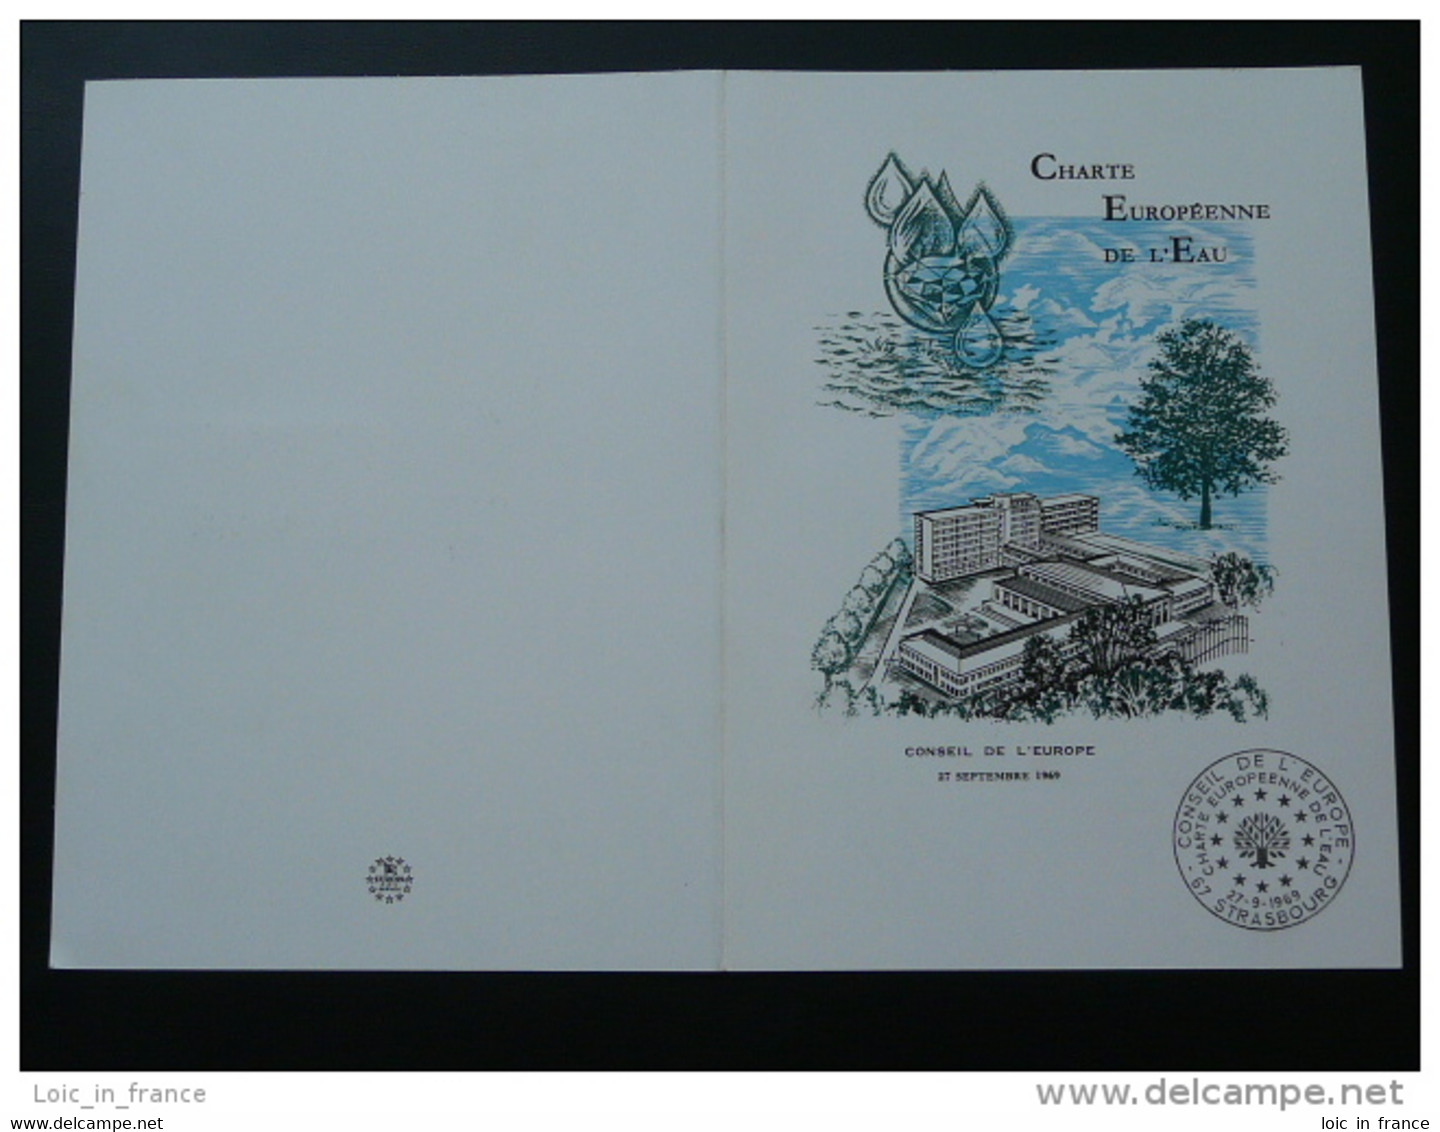 Dépliant Folder Charte Européenne De L'eau Nature And Water Conservation Conseil De L'Europe 1969 - Water